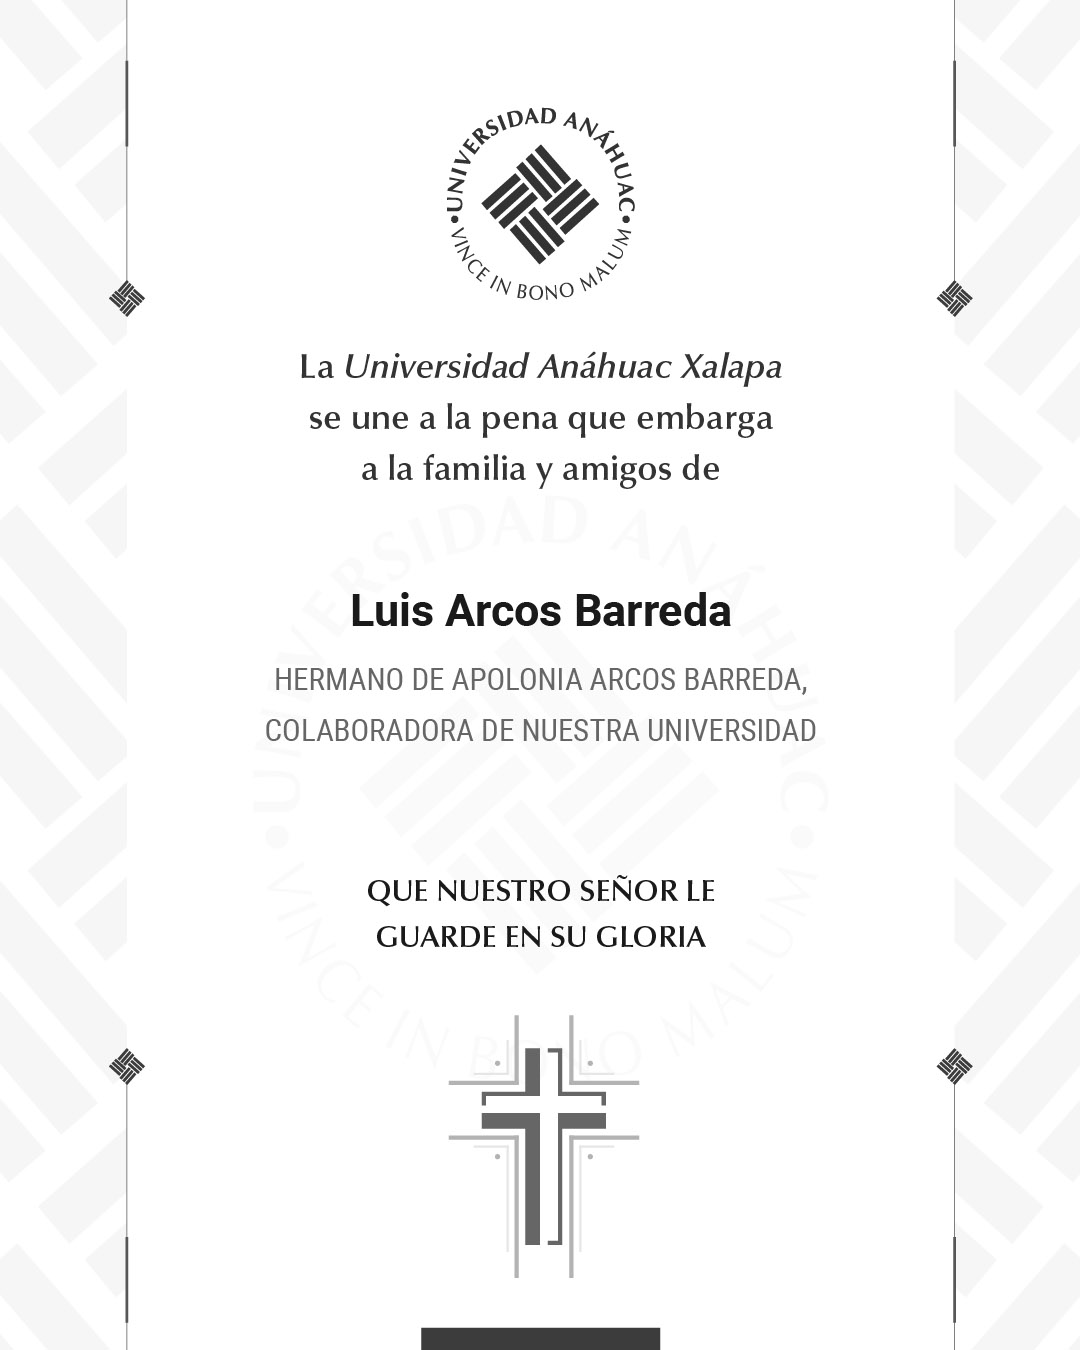 5 / 18 - Luis Arcos Barreda